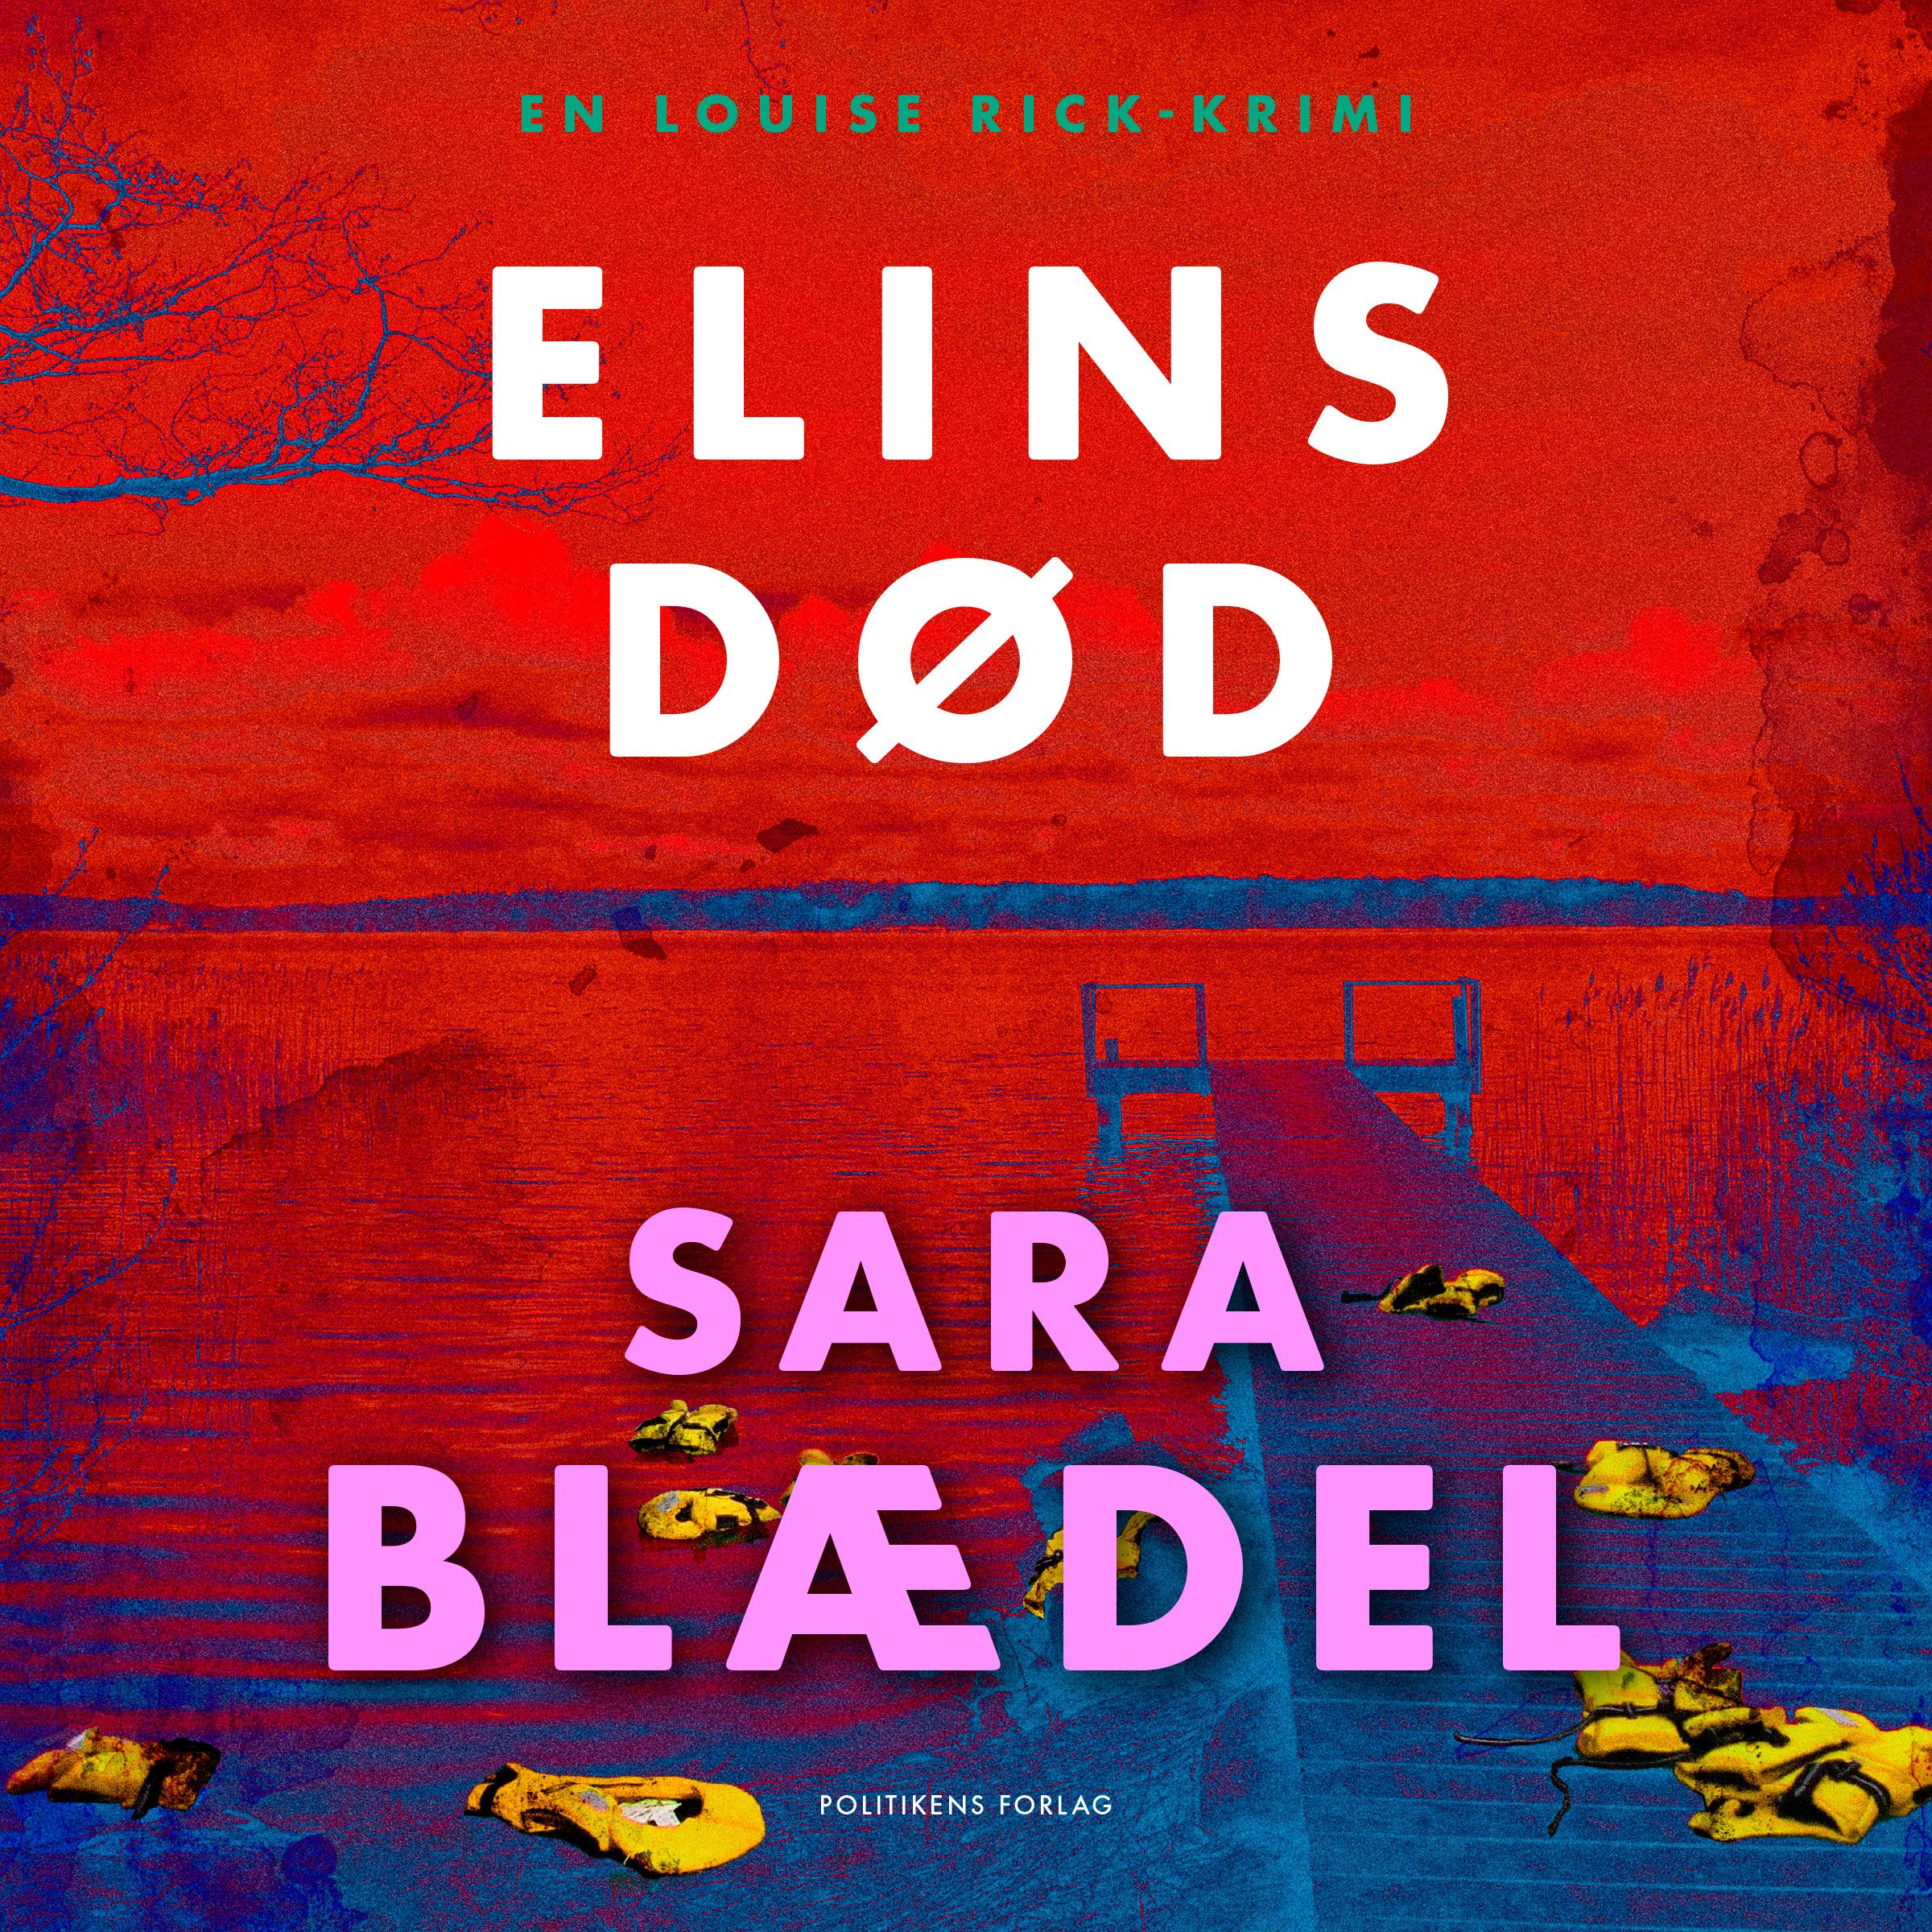 Elins død, ljudbok av Sara Blædel